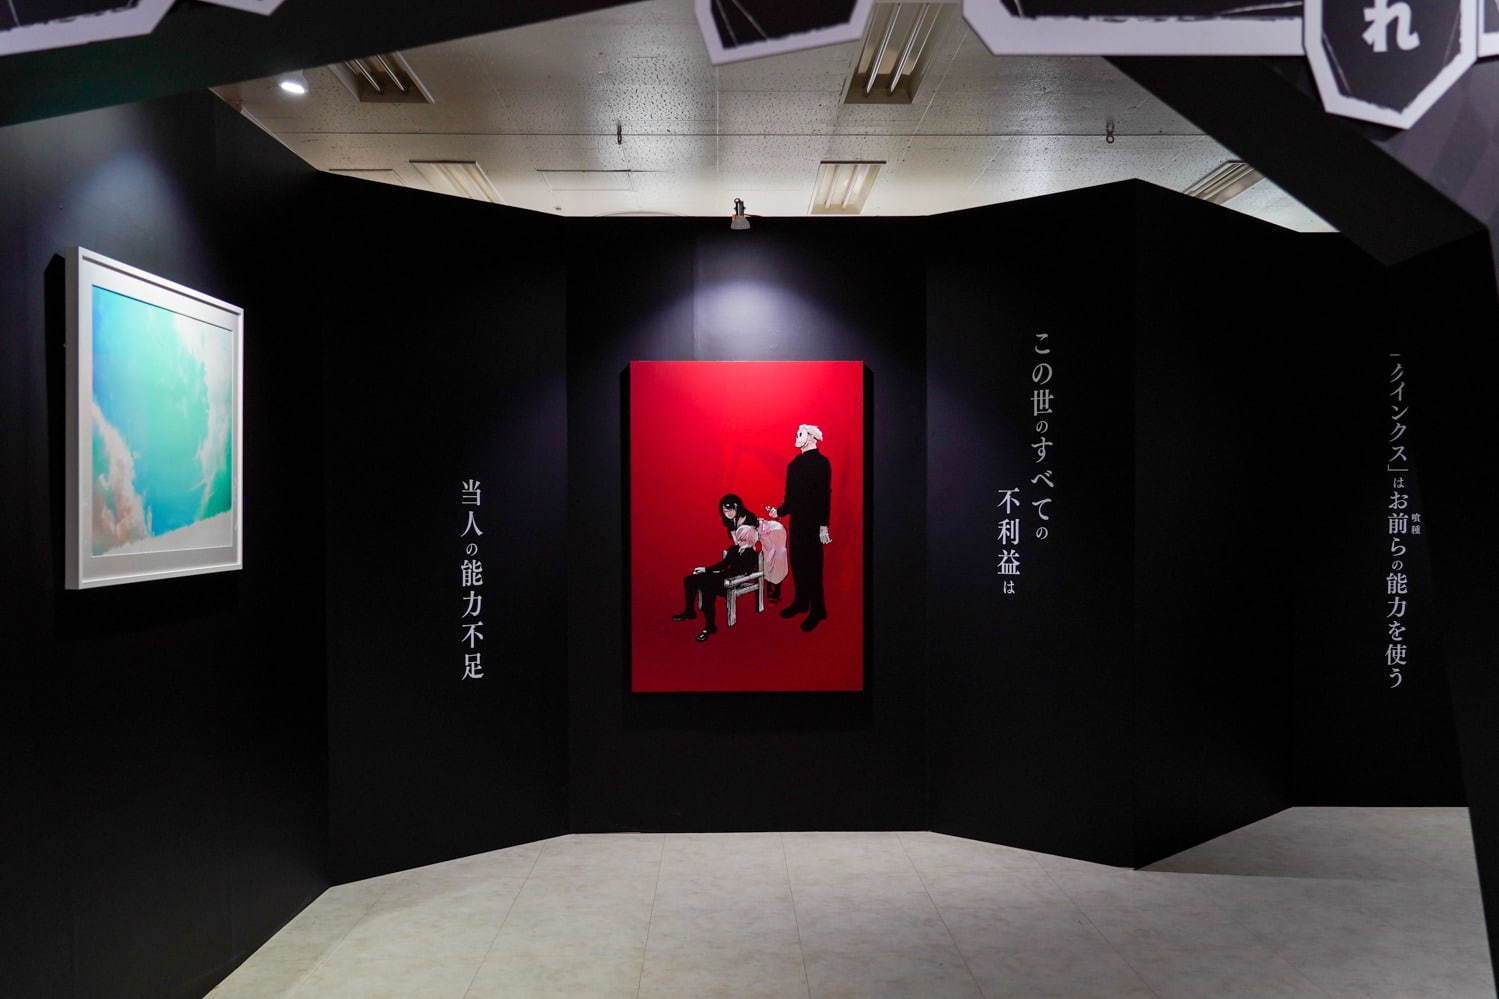 写真18 33 石田スイ展 東京喰種 Jackjeanne 初の大規模展が名古屋で 初期原稿も初公開 ファッションプレス